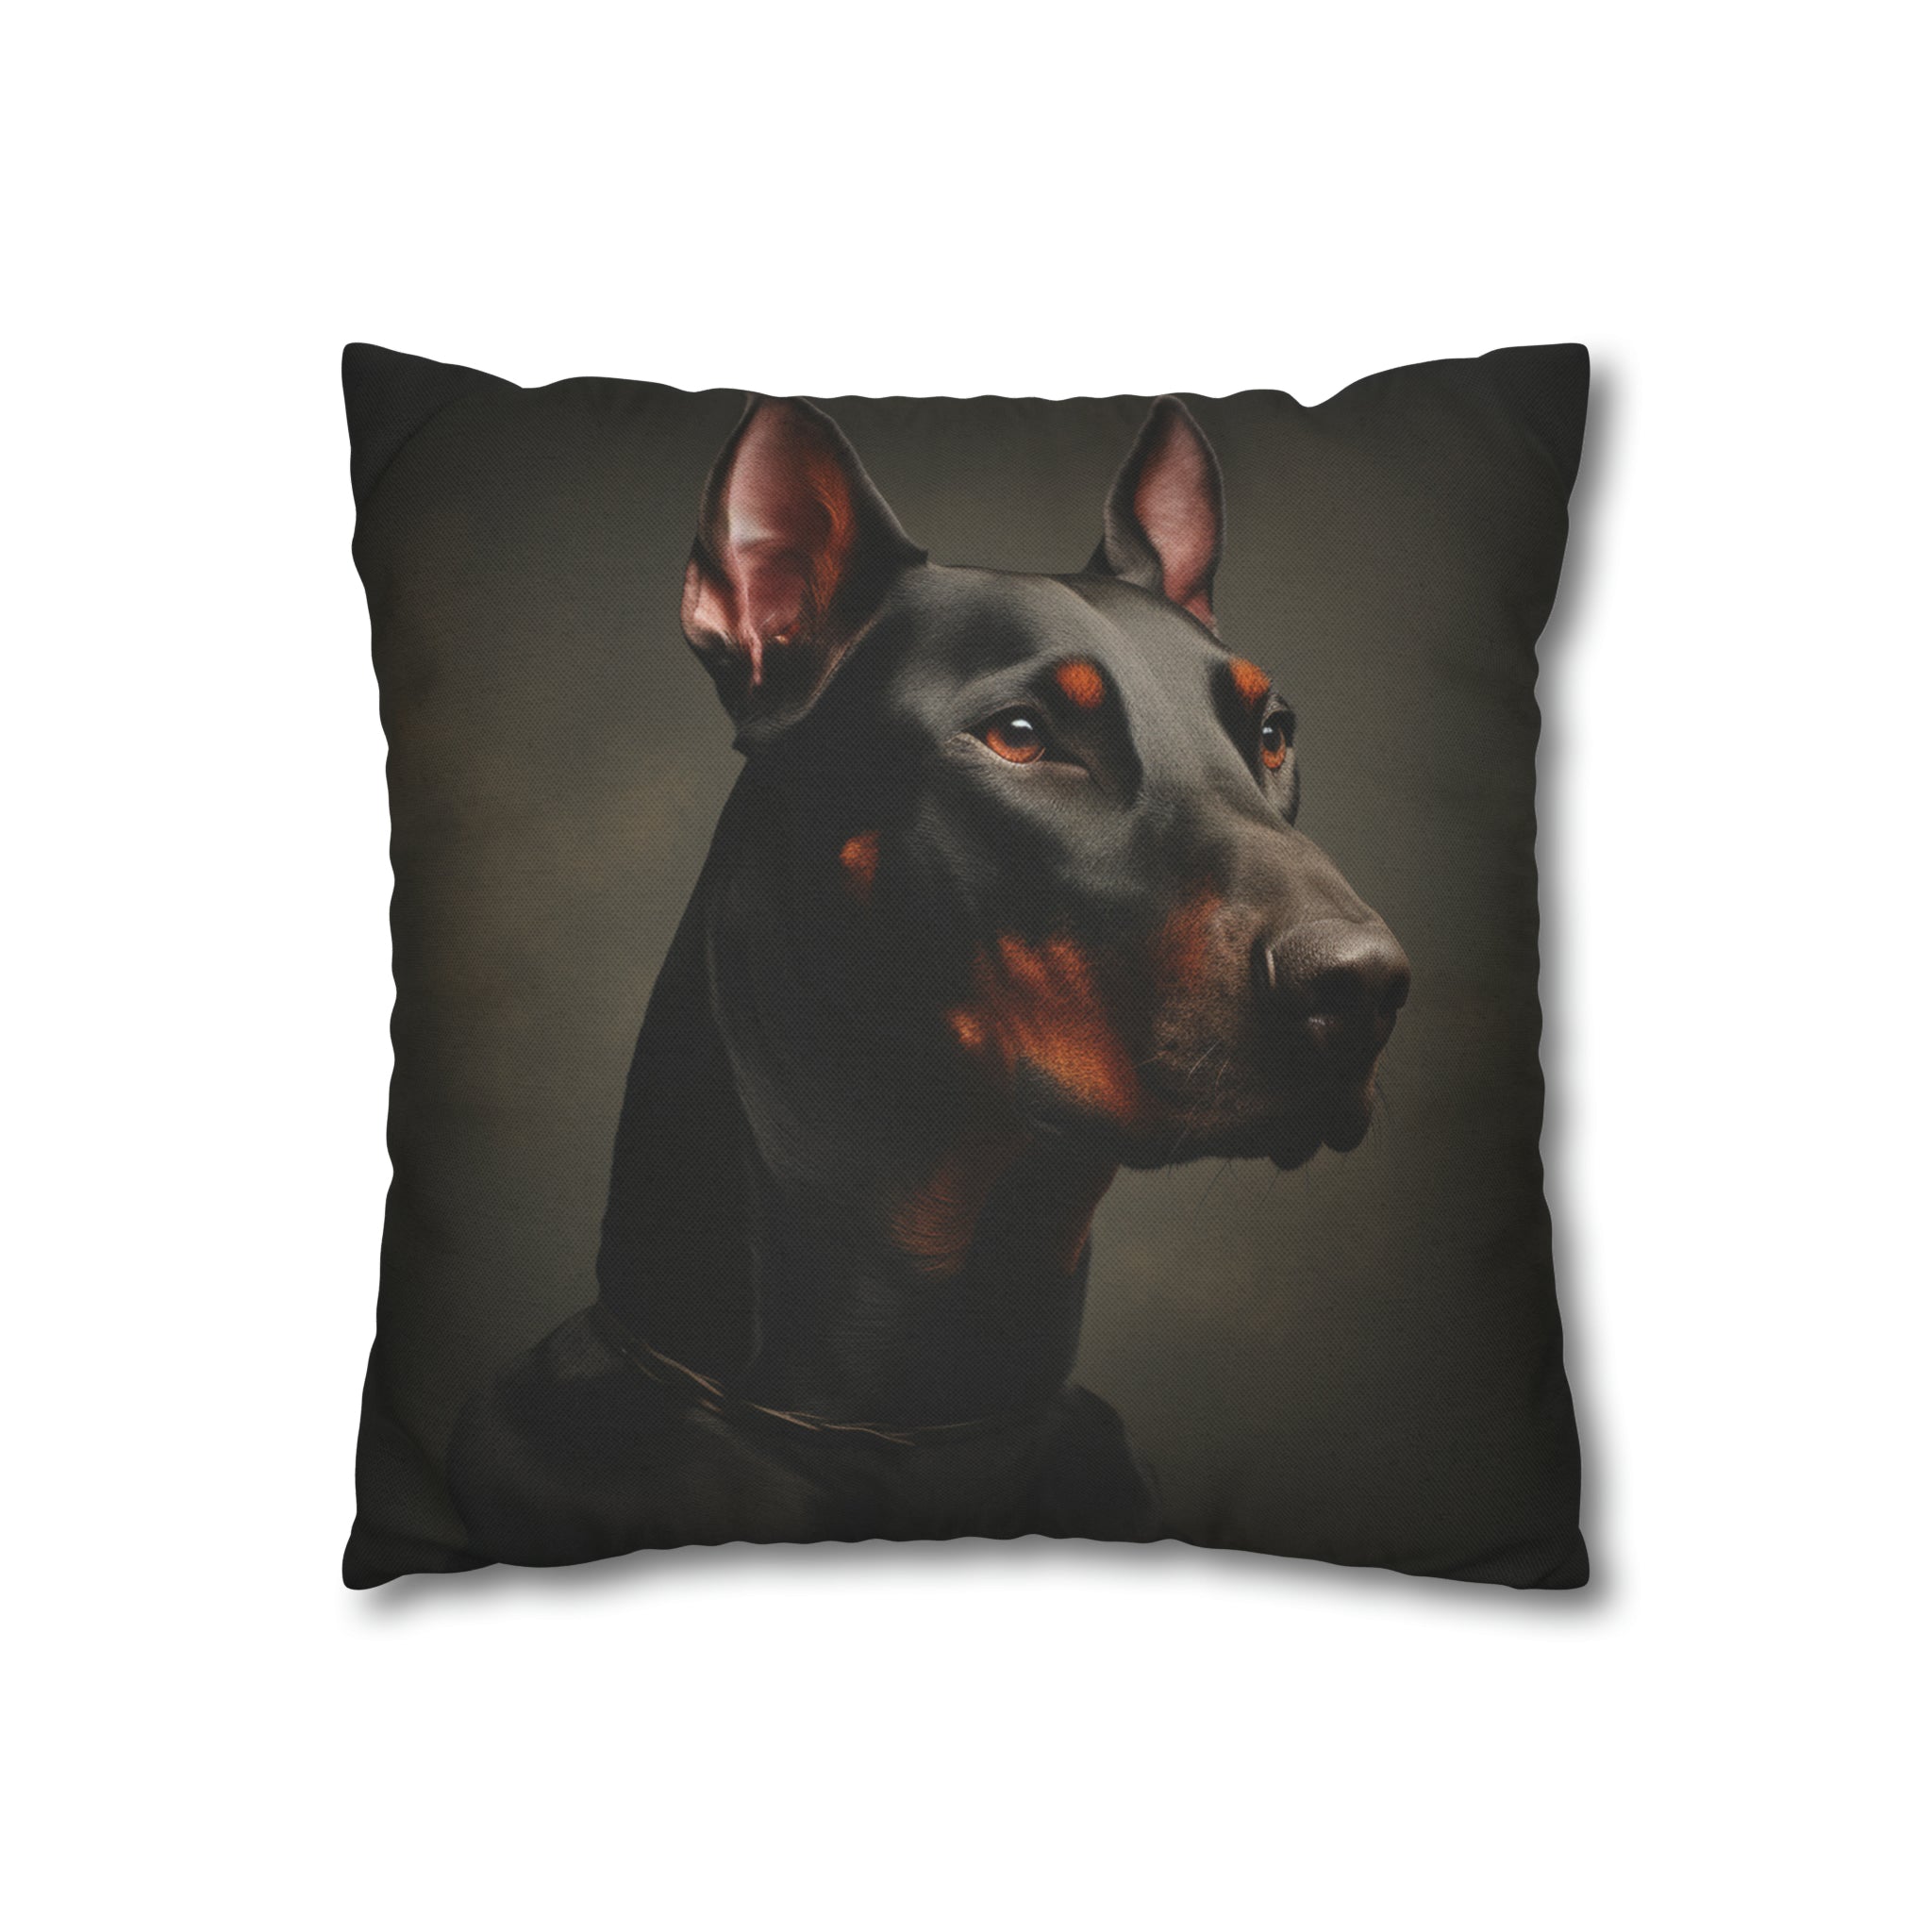 Beware of Dog" Spun Polyester Square Pillow Case- Dobermann Pinscher (Professional Art)